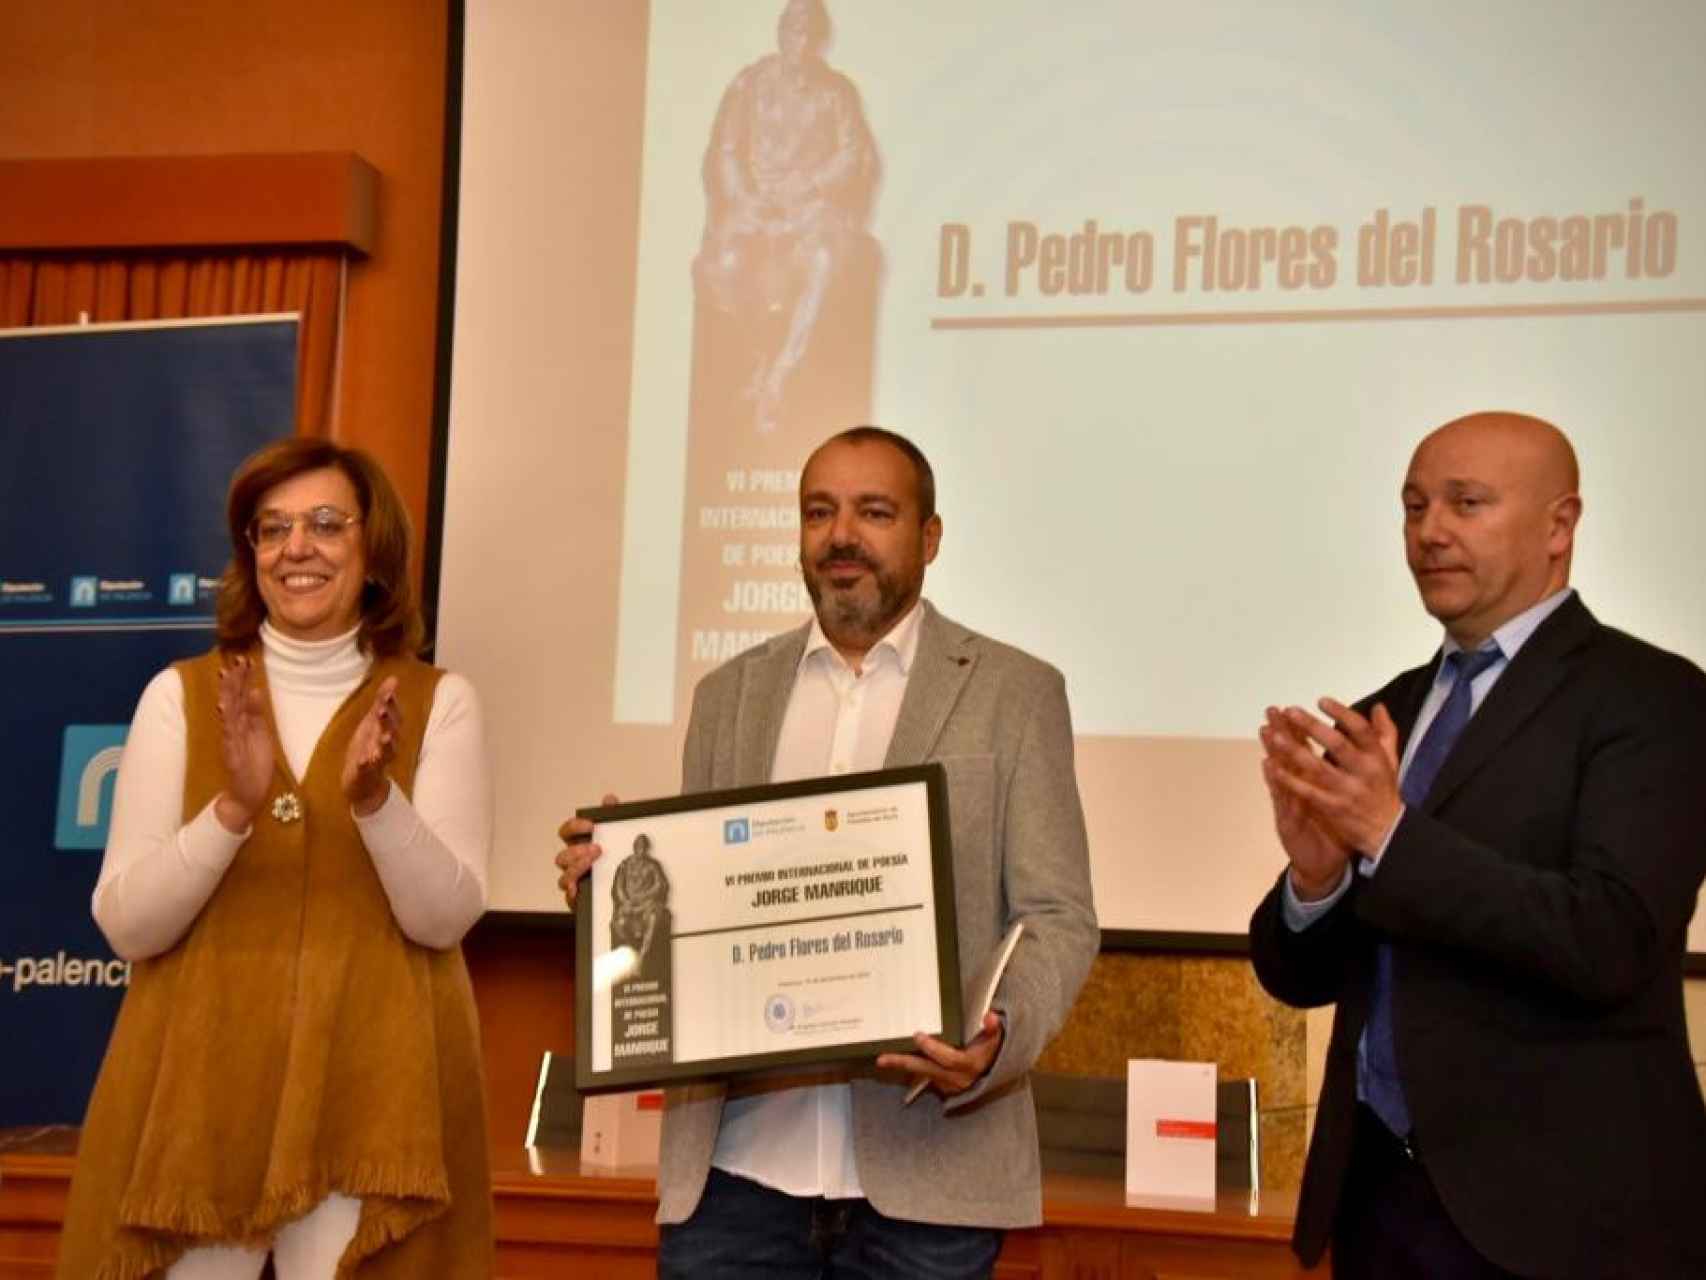 El poeta Pedro Flores recibe el VI Premio Internacional de Poesía 'Jorge Manrique', este viernes.